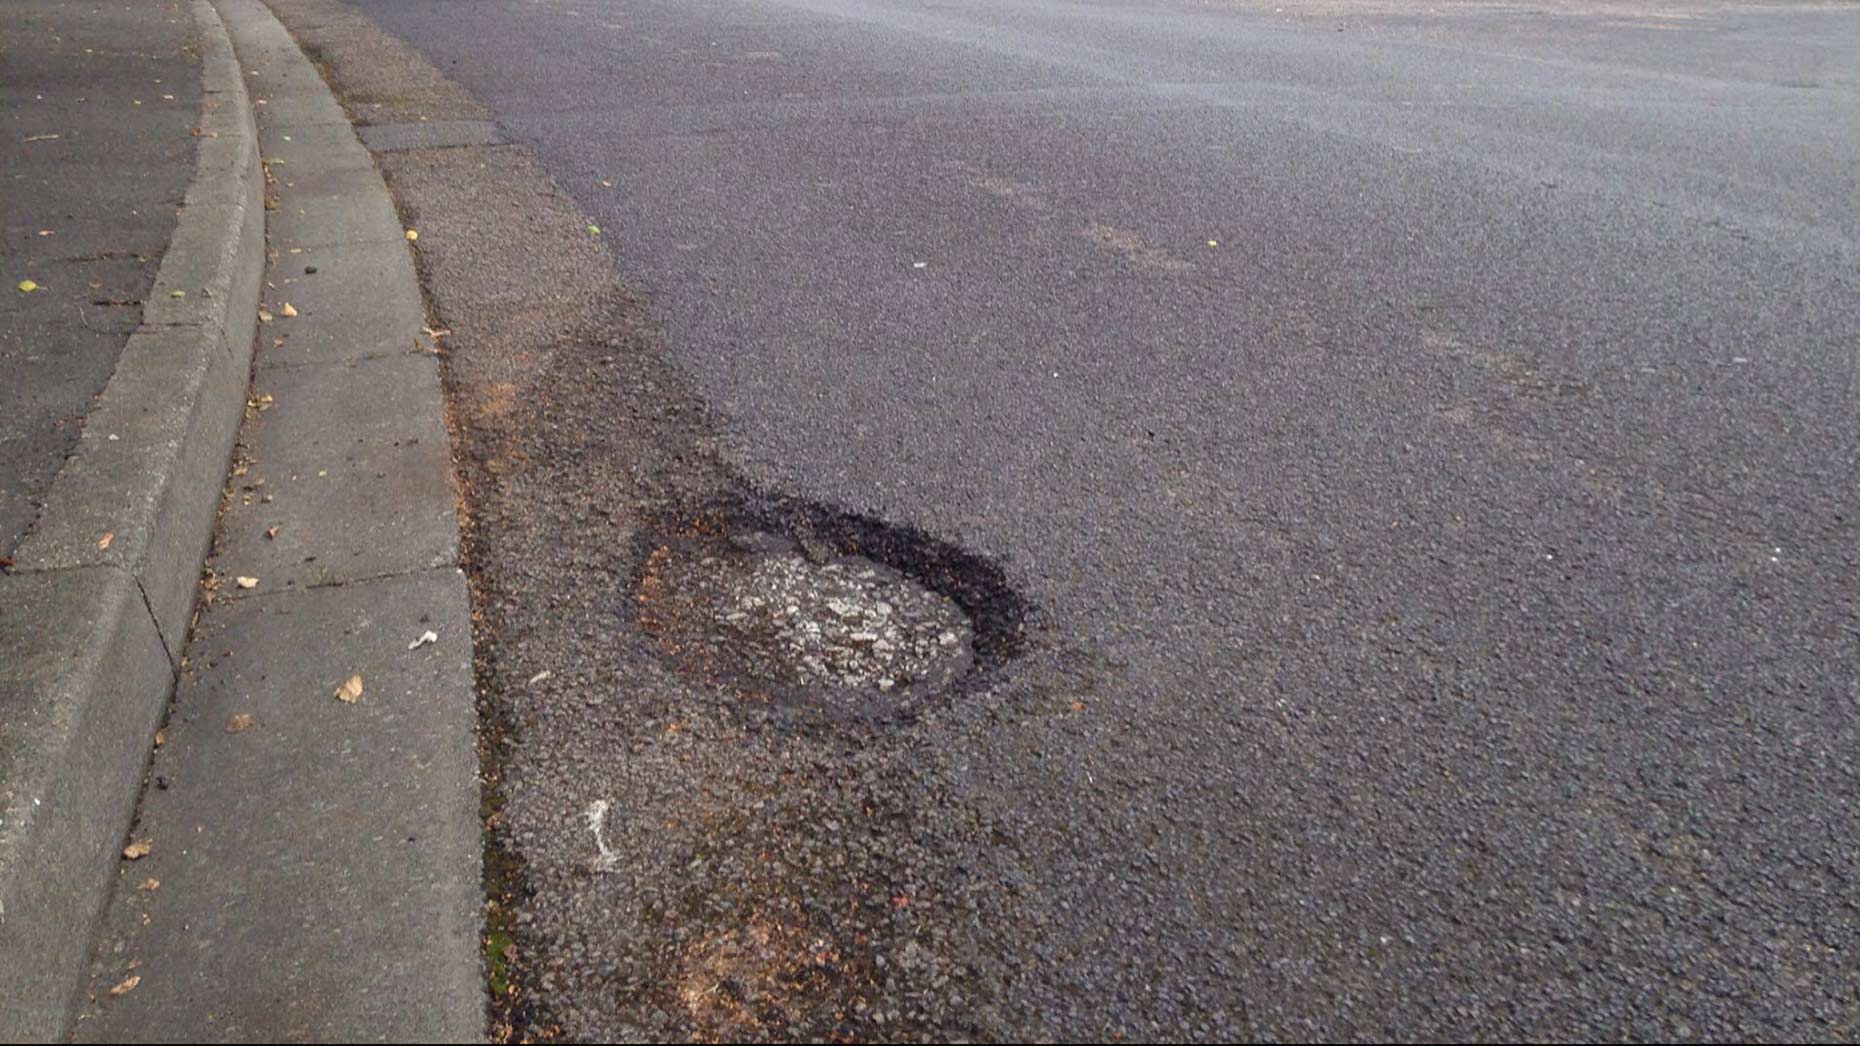 A large pothole on Winthorpe Road in Birchwood